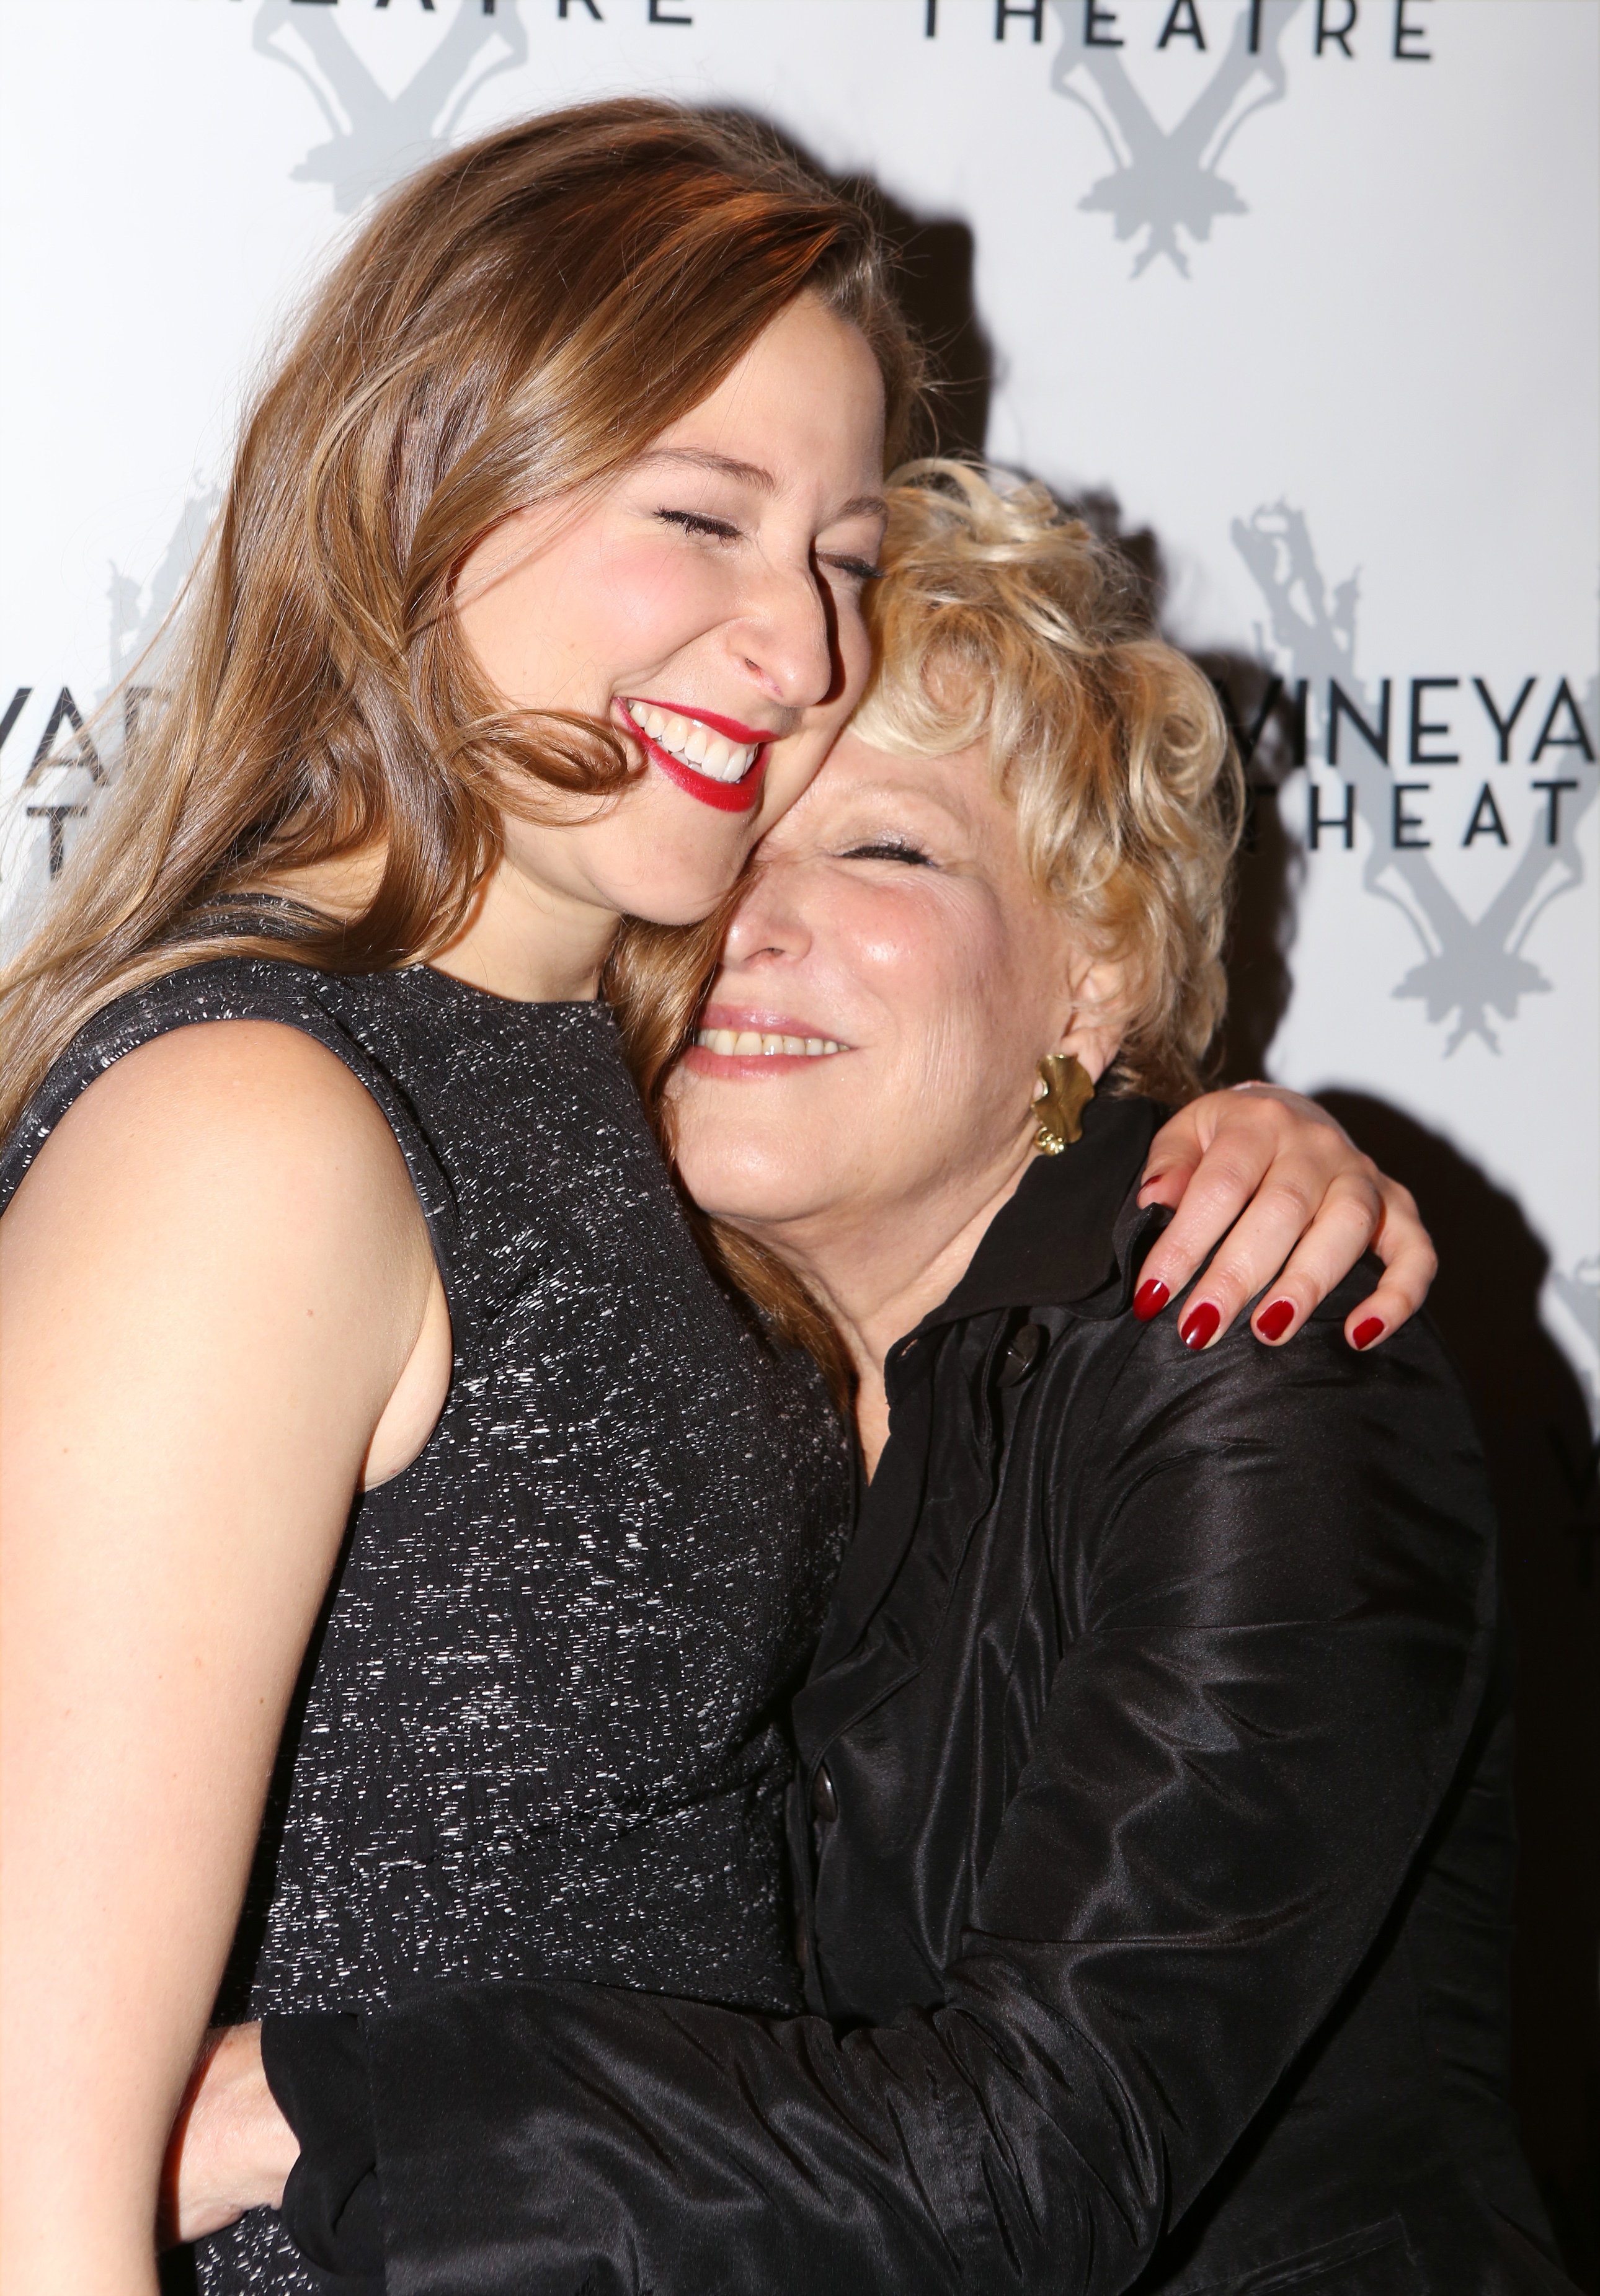 Sophie von Haselberg et maman Bette Midler assistent à la soirée d'ouverture de "Billy &amp; Ray" à Off-Broadway le 20 octobre 2014 à New York | Source : Getty Images